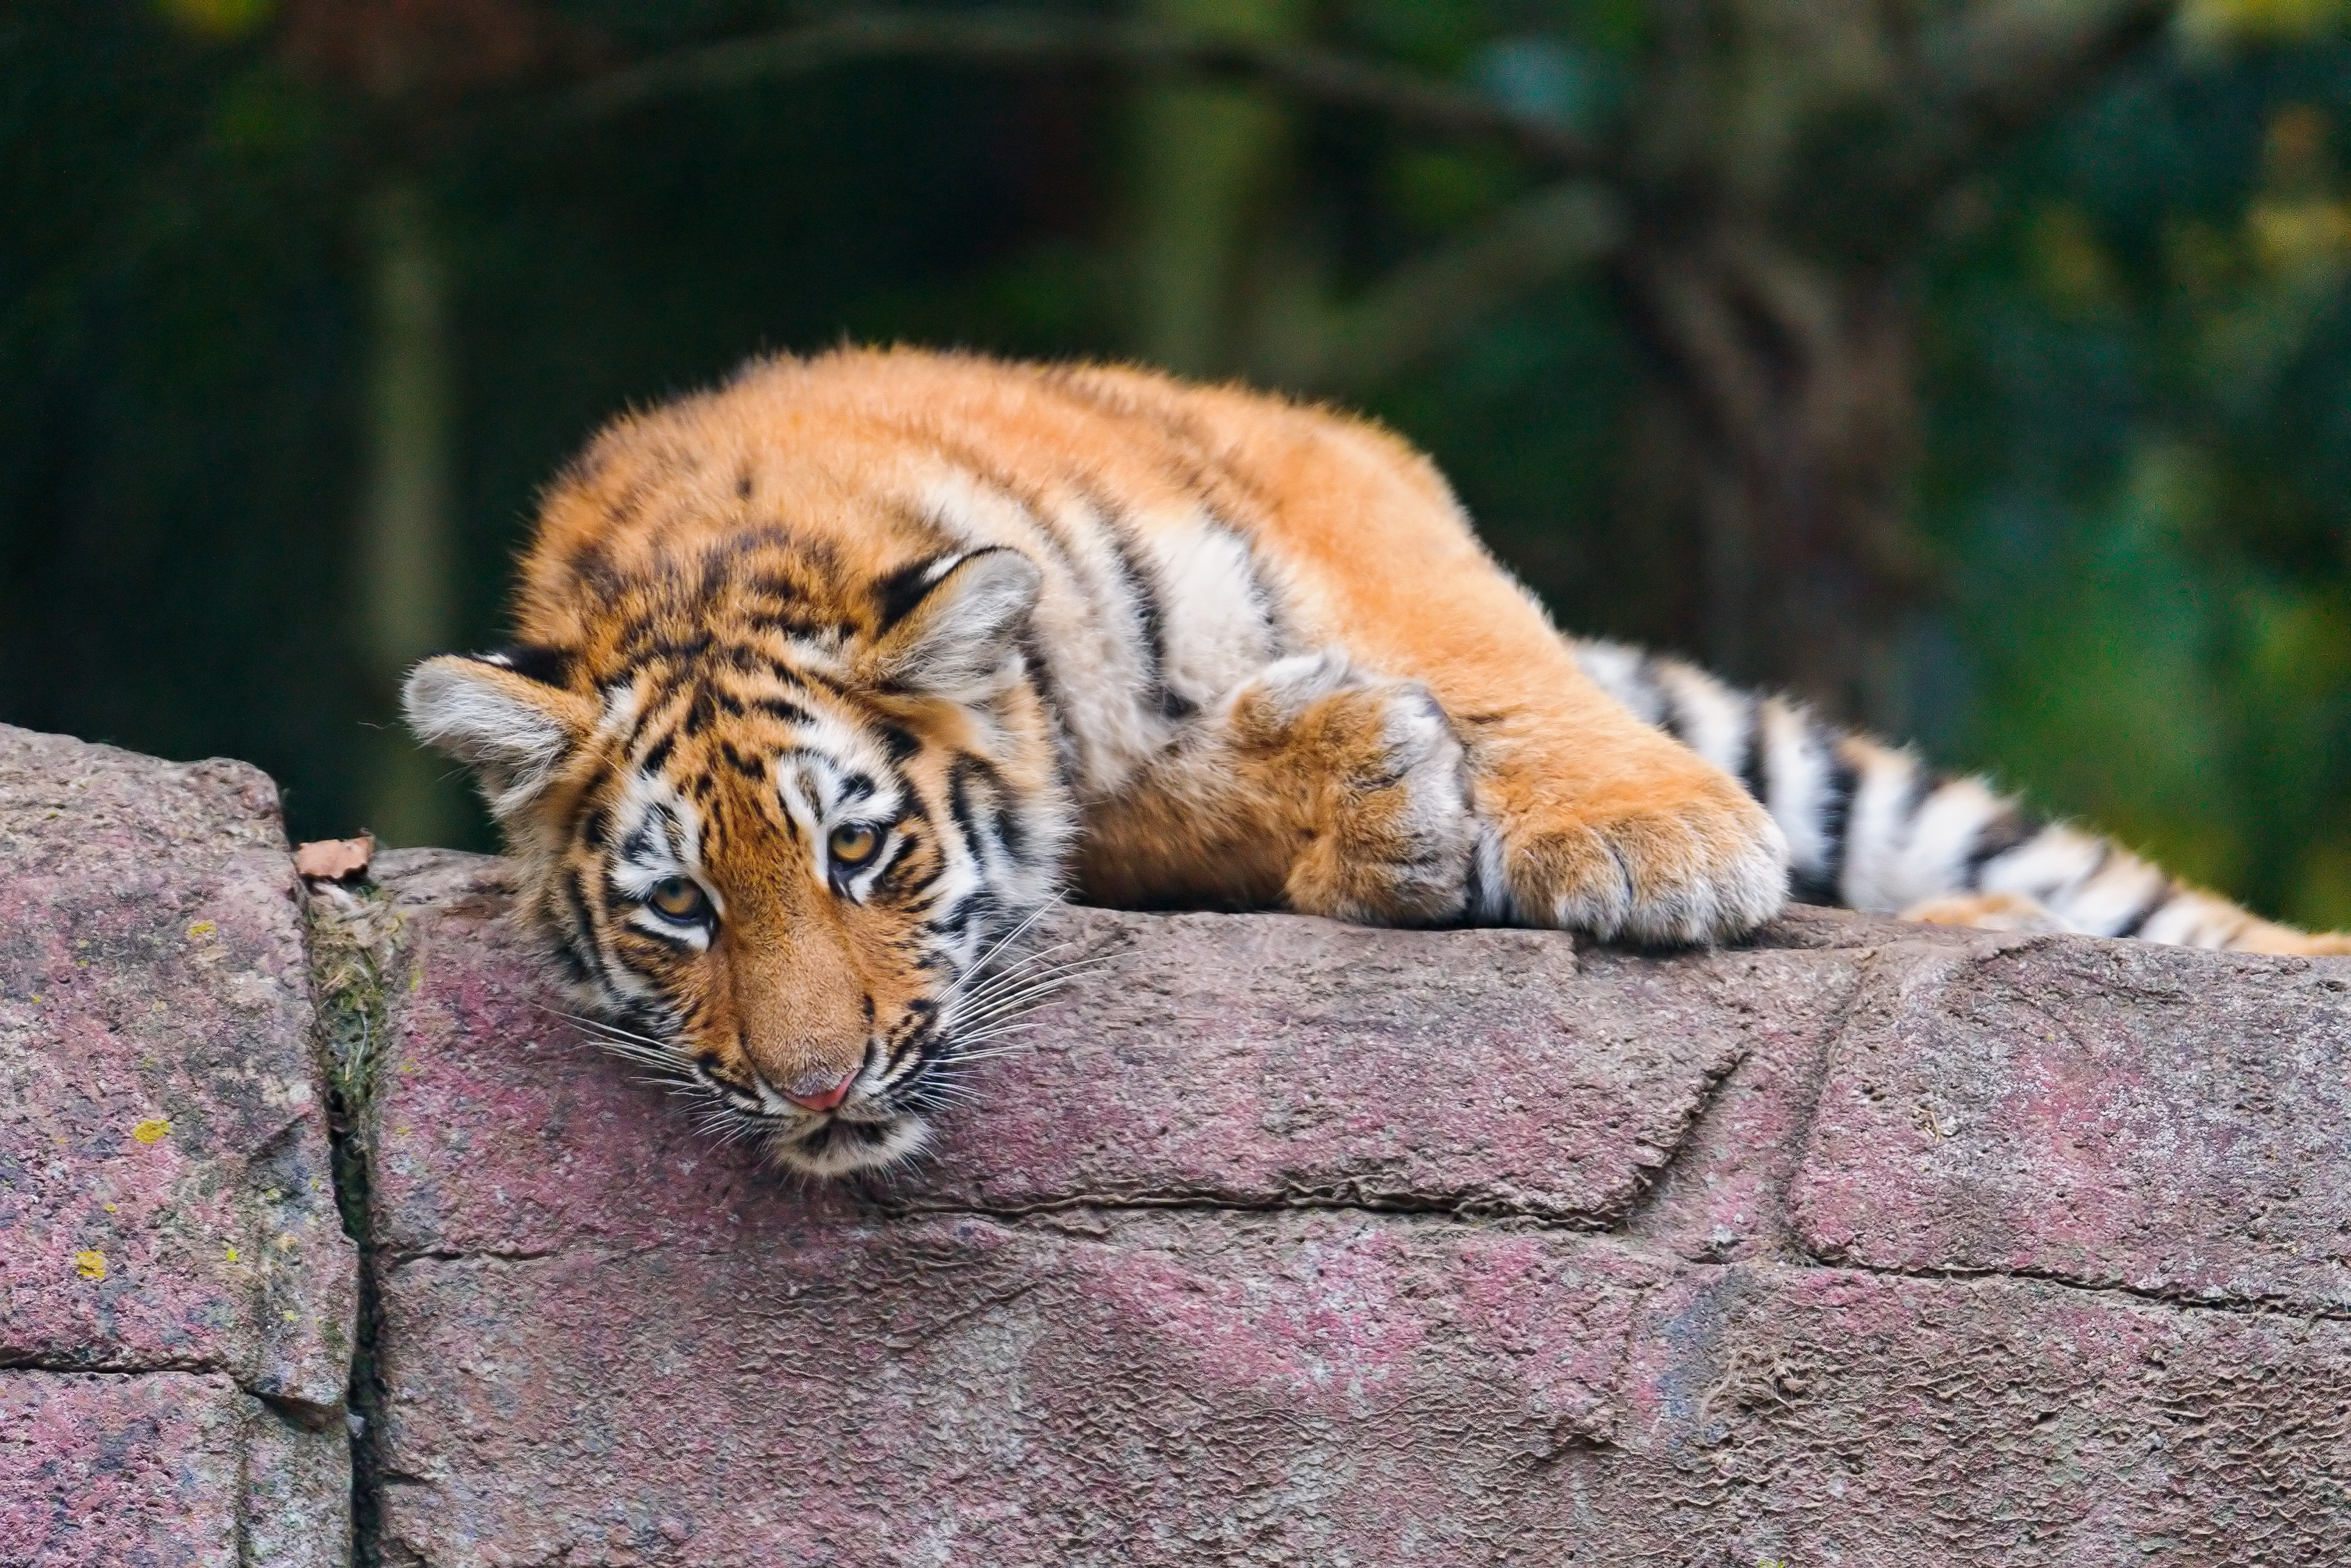 躺在石墙上的老虎